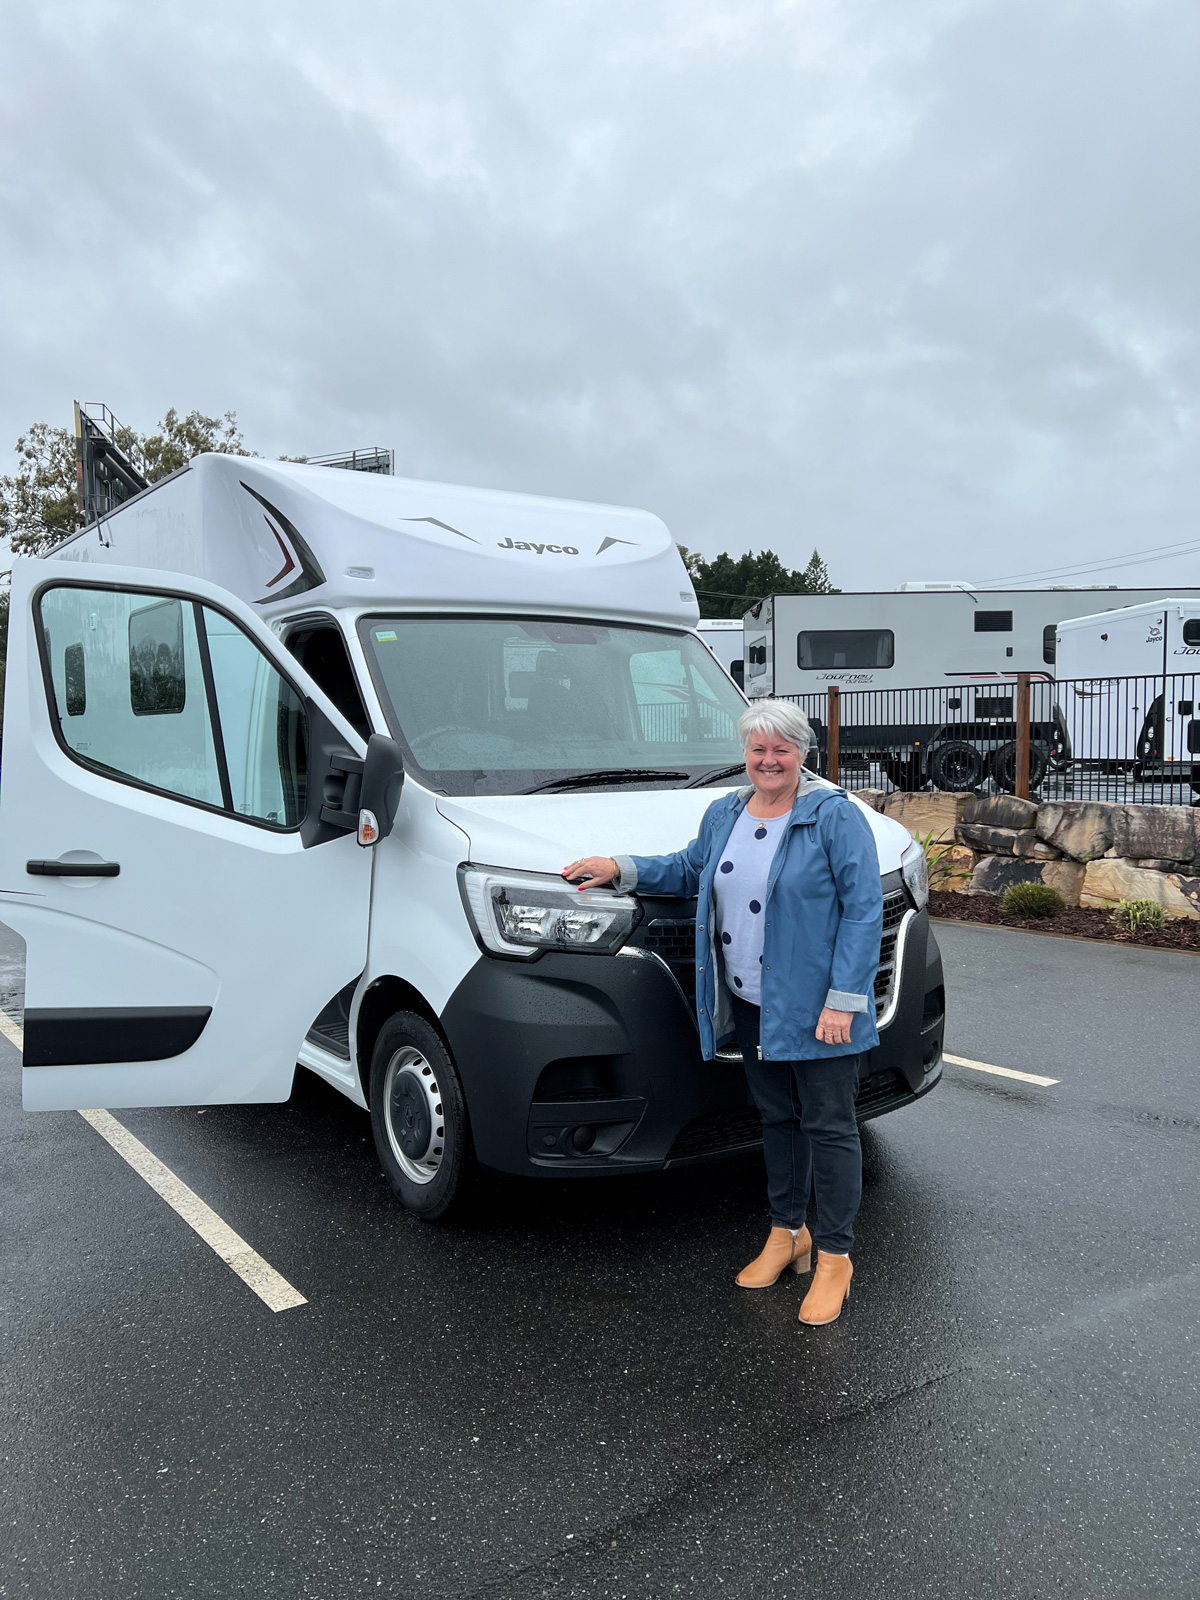 Sue standing in front of her new camper van